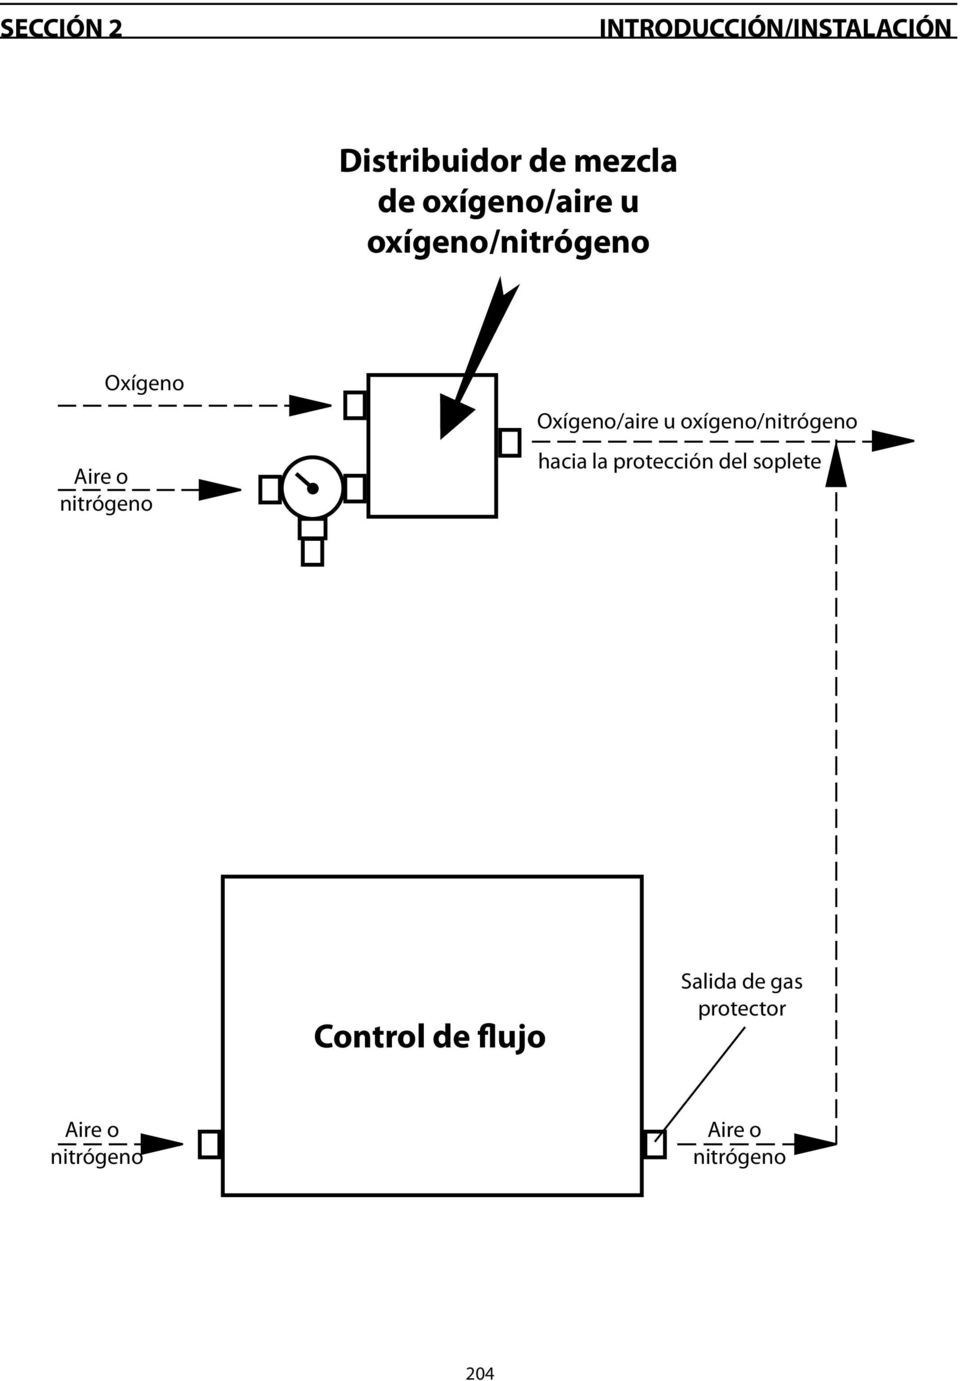 Oxígeno/aire u oxígeno/nitrógeno hacia la protección del soplete